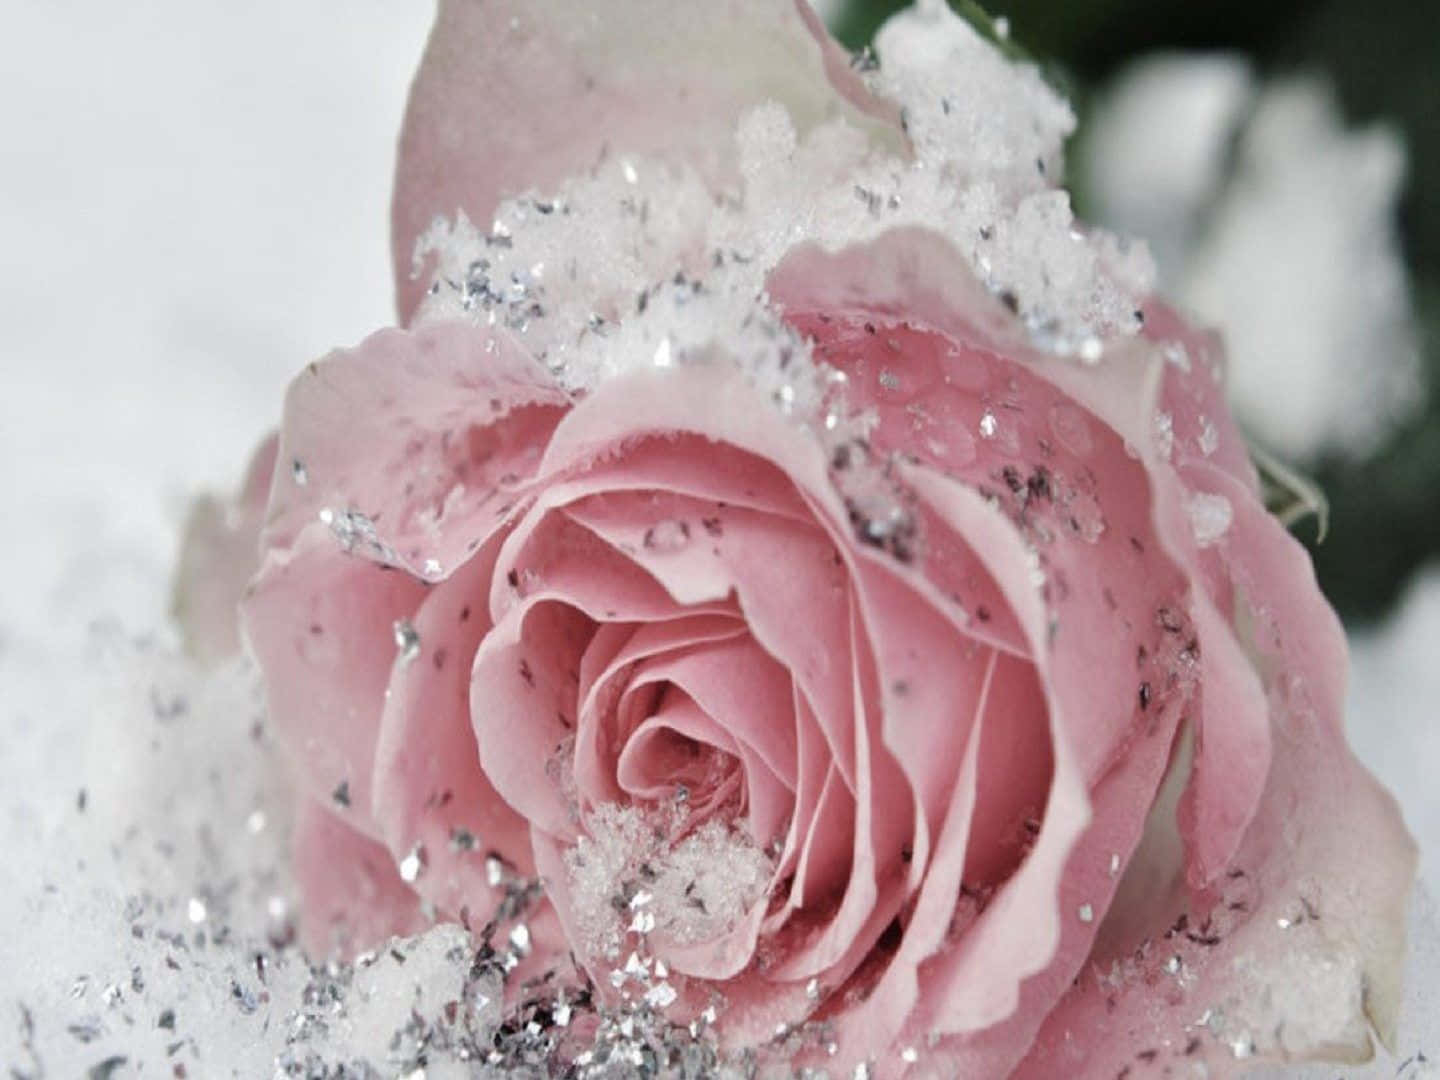 Prenditiun Attimo Per Apprezzare La Bellezza Di Questa Rosa Rosa.